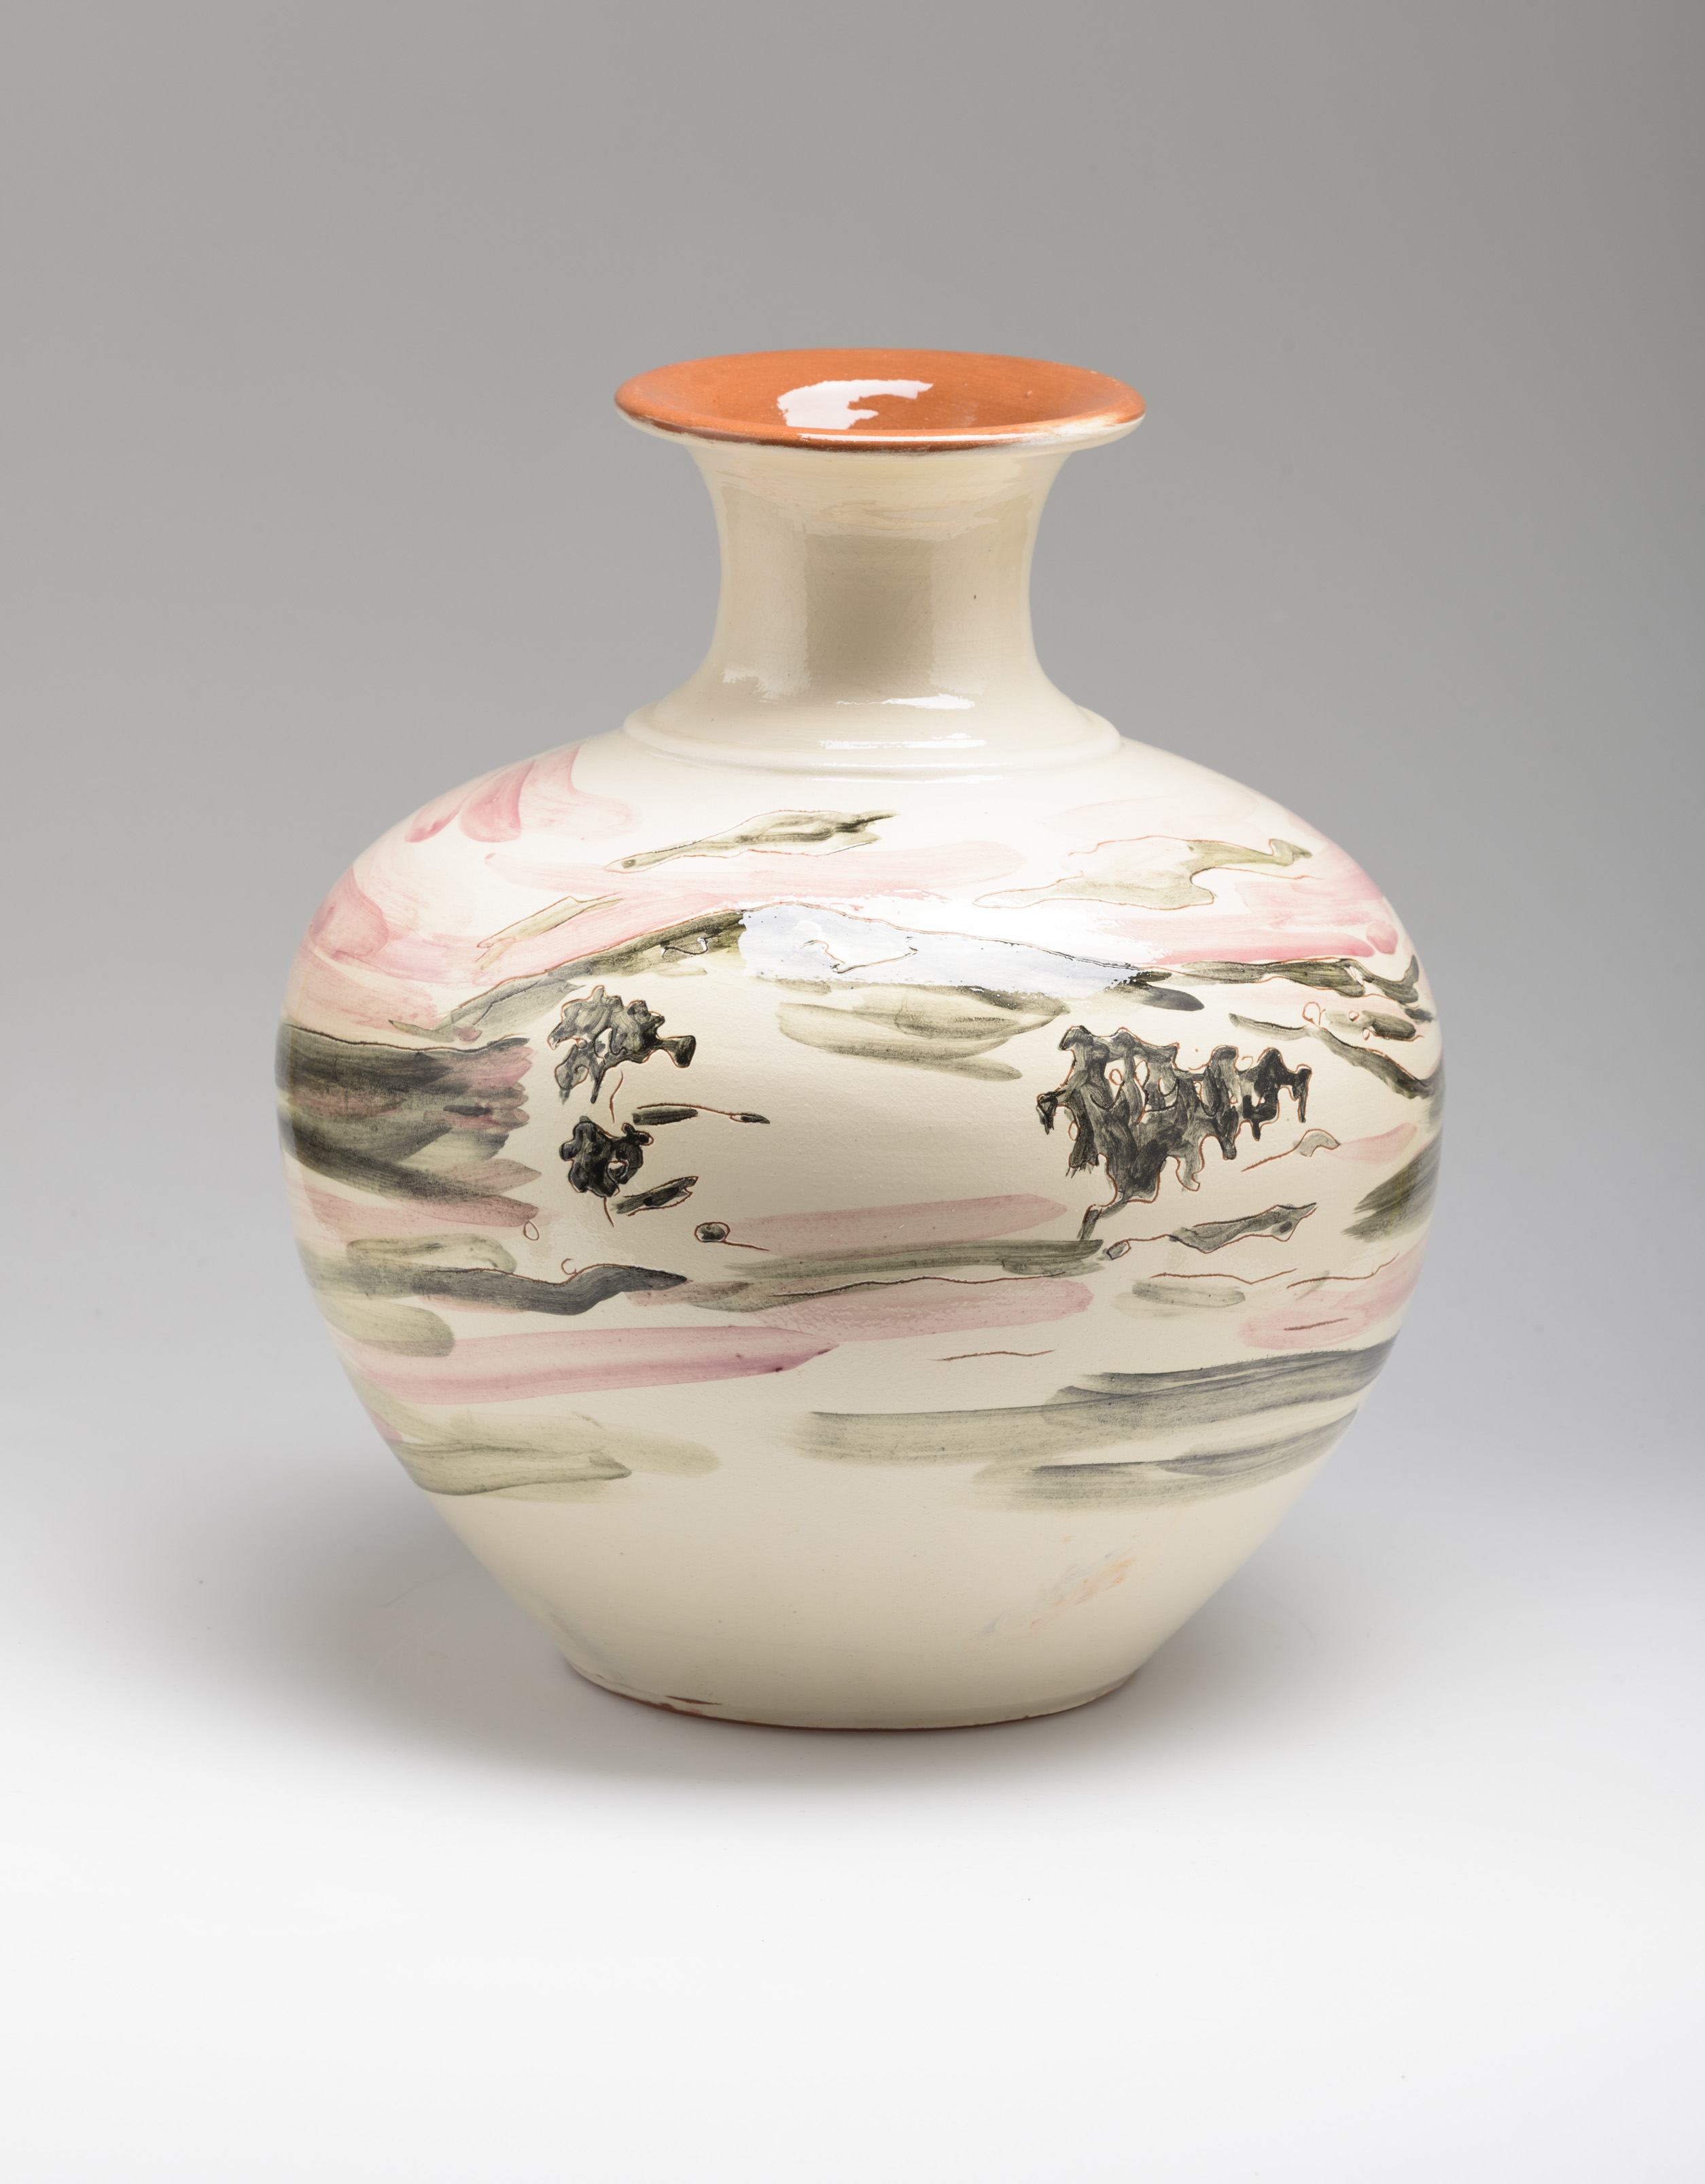 Flower Vase, ceramic, 29 cm. high Portugal 2015